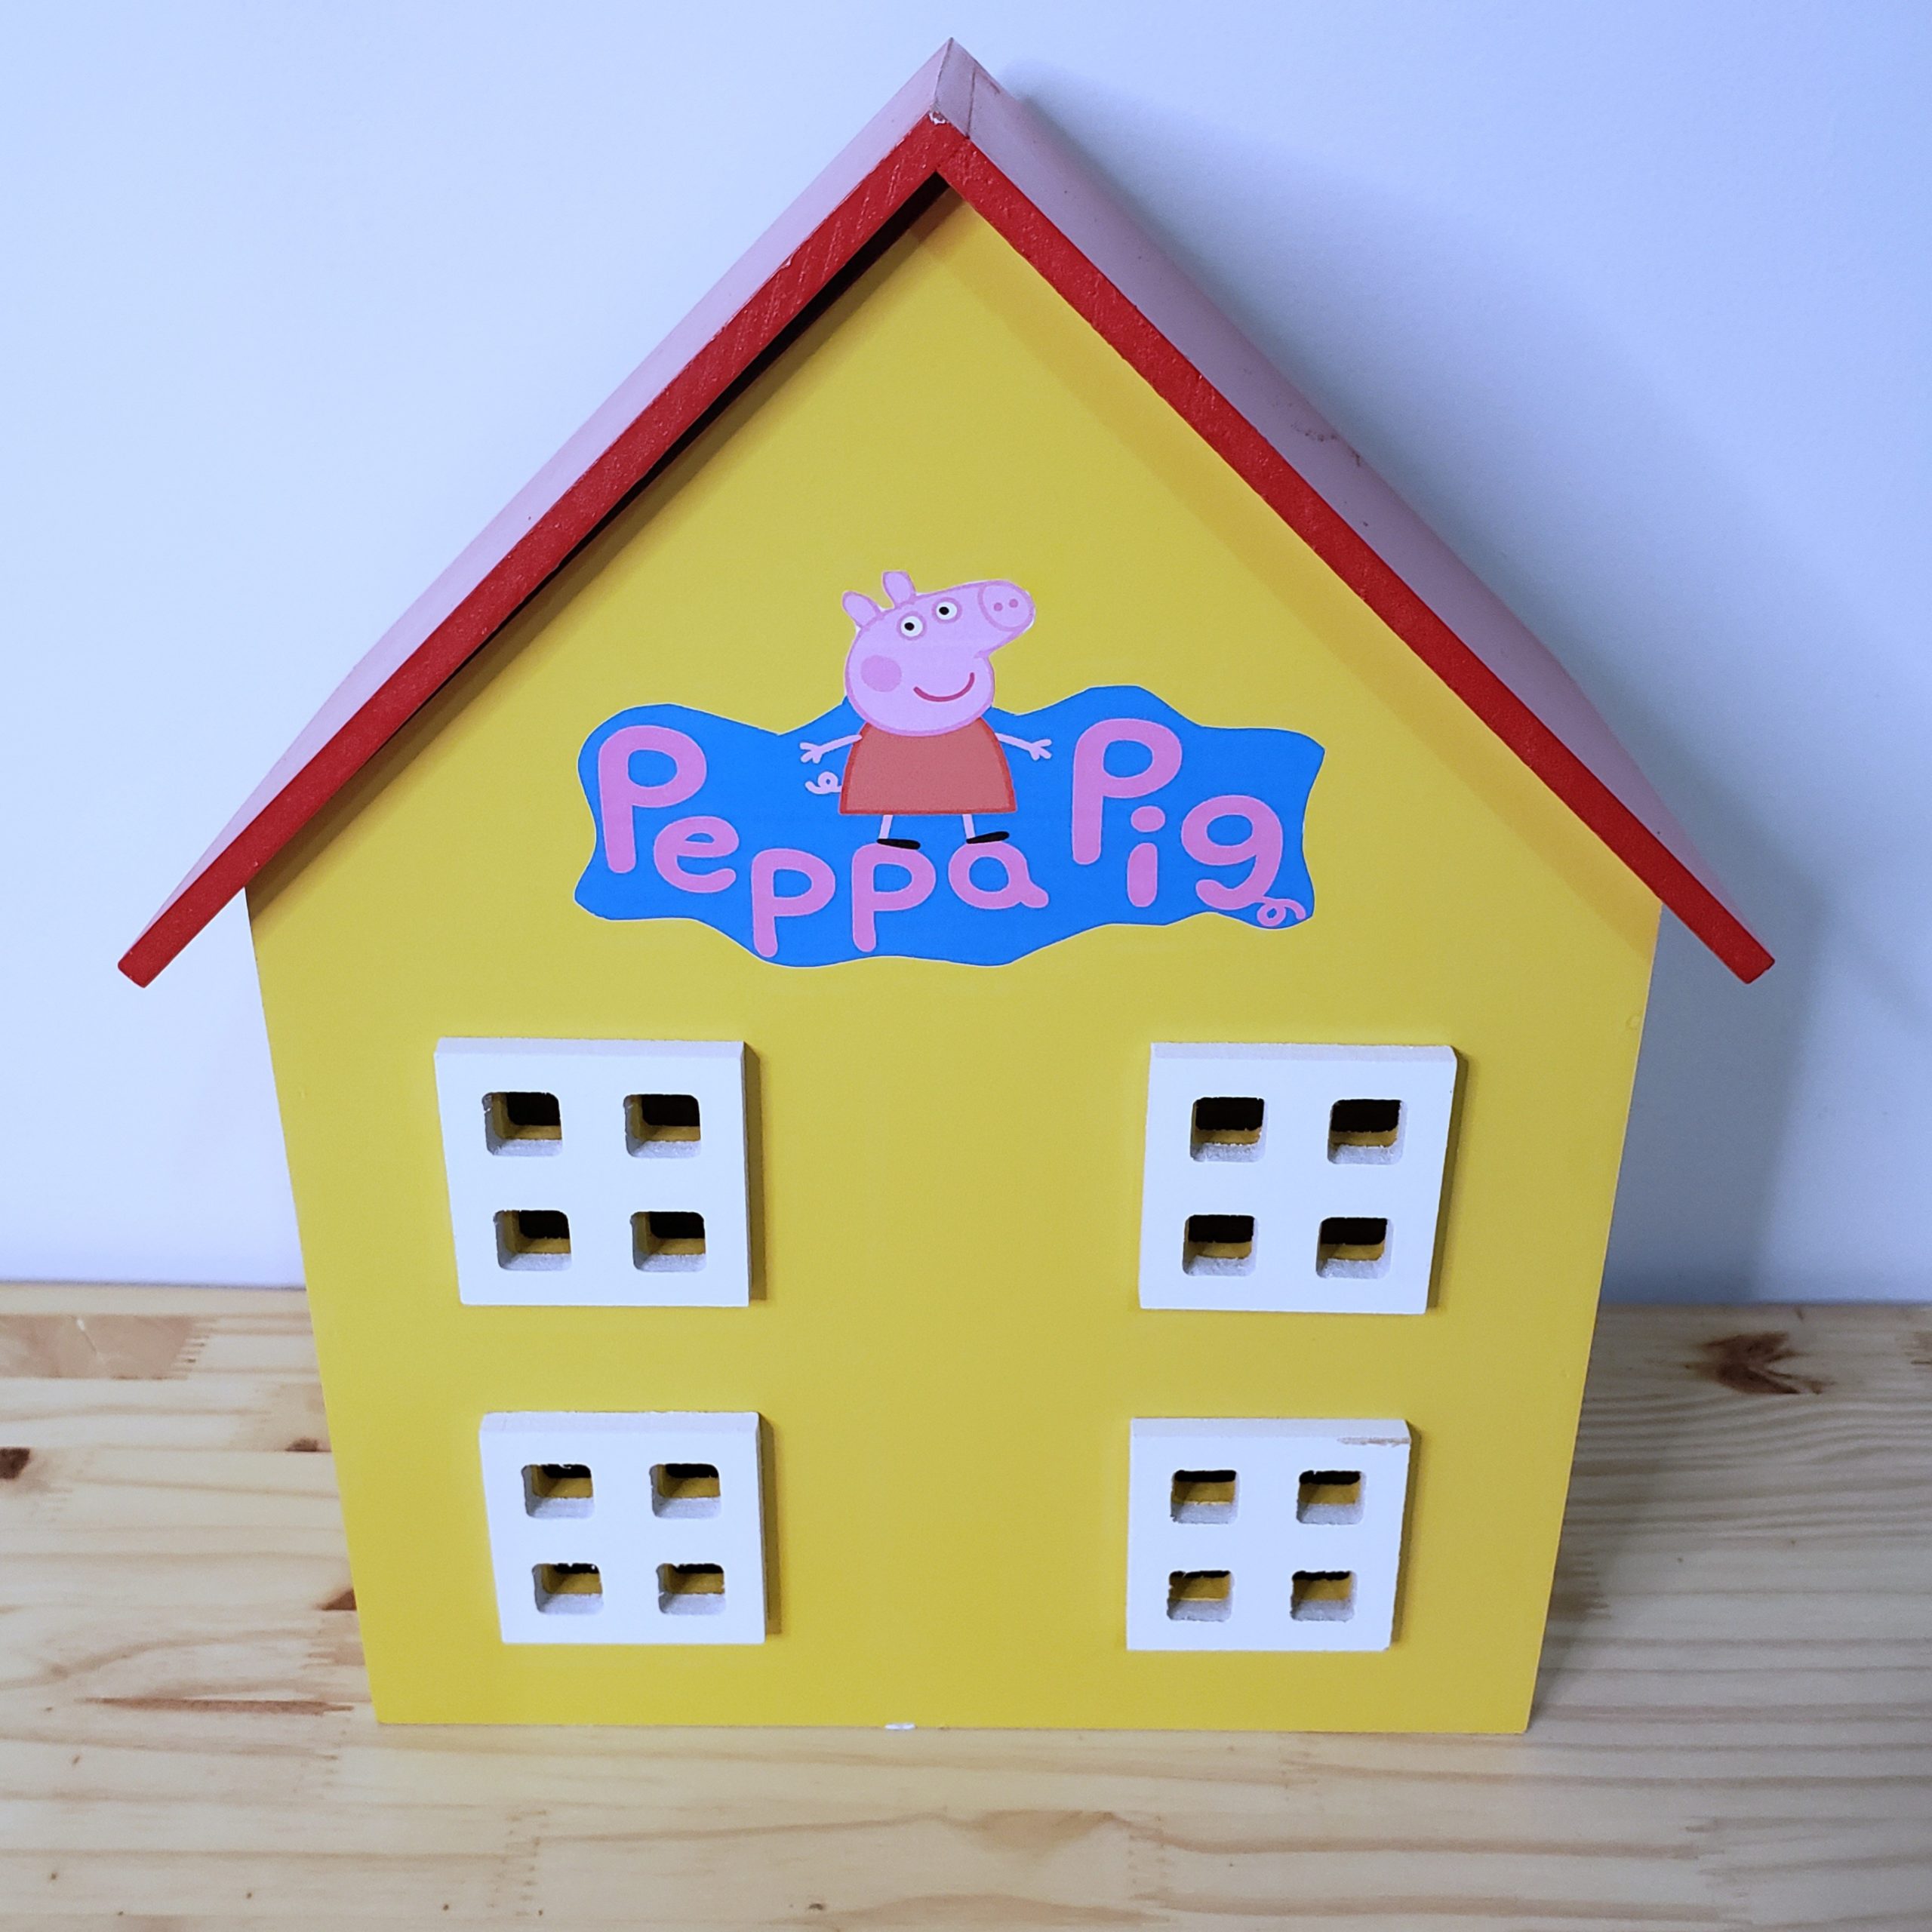 Casa Peppa Pig Usada